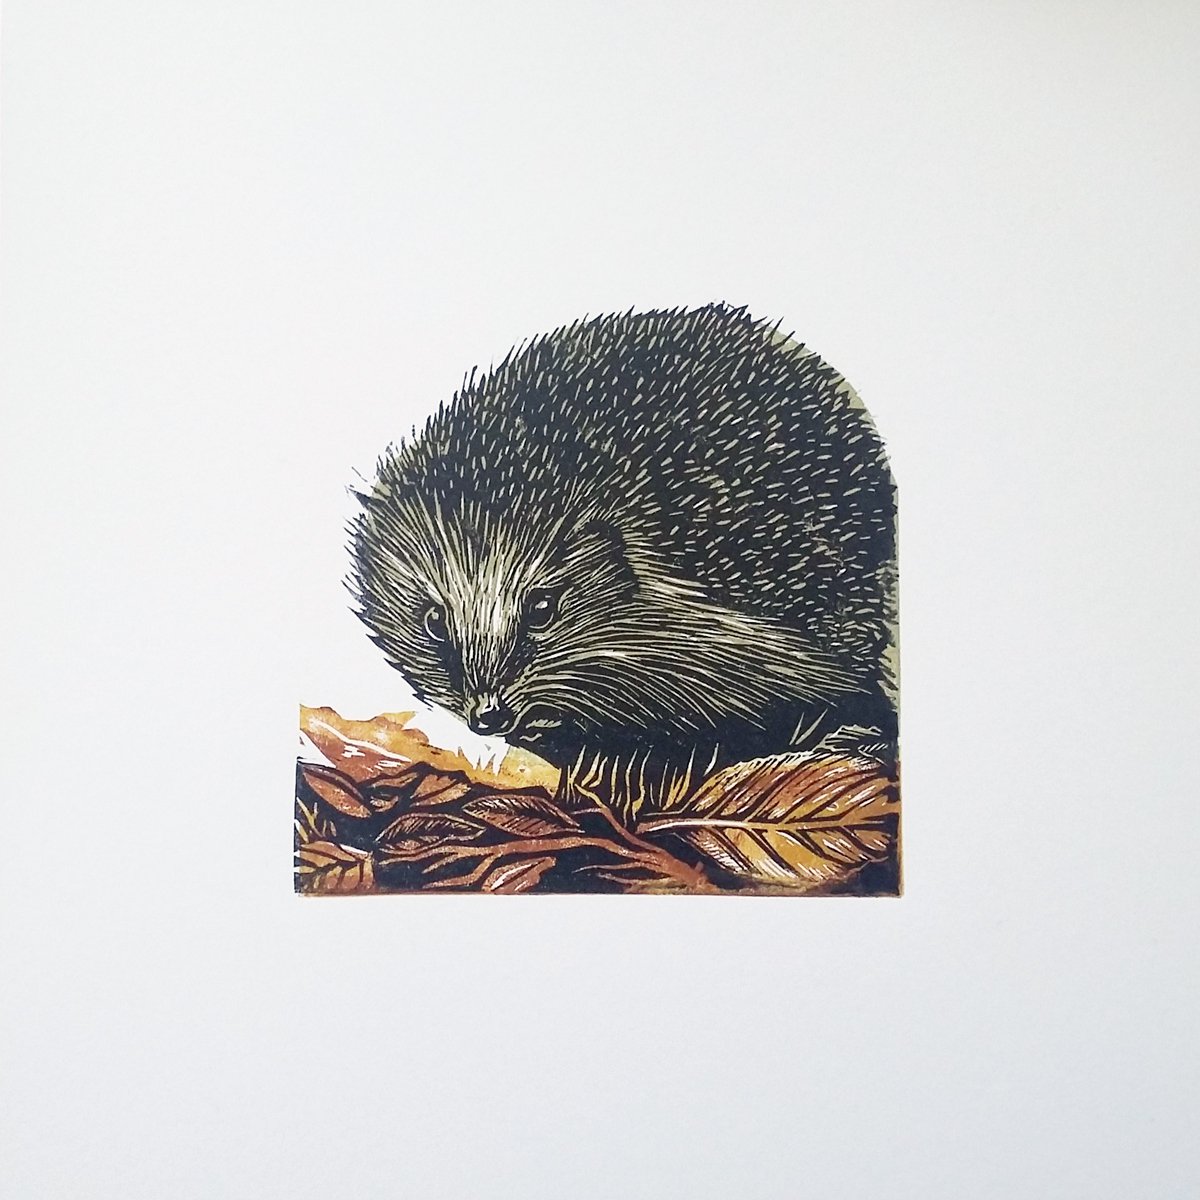 Hedgehog by Carolynne Coulson